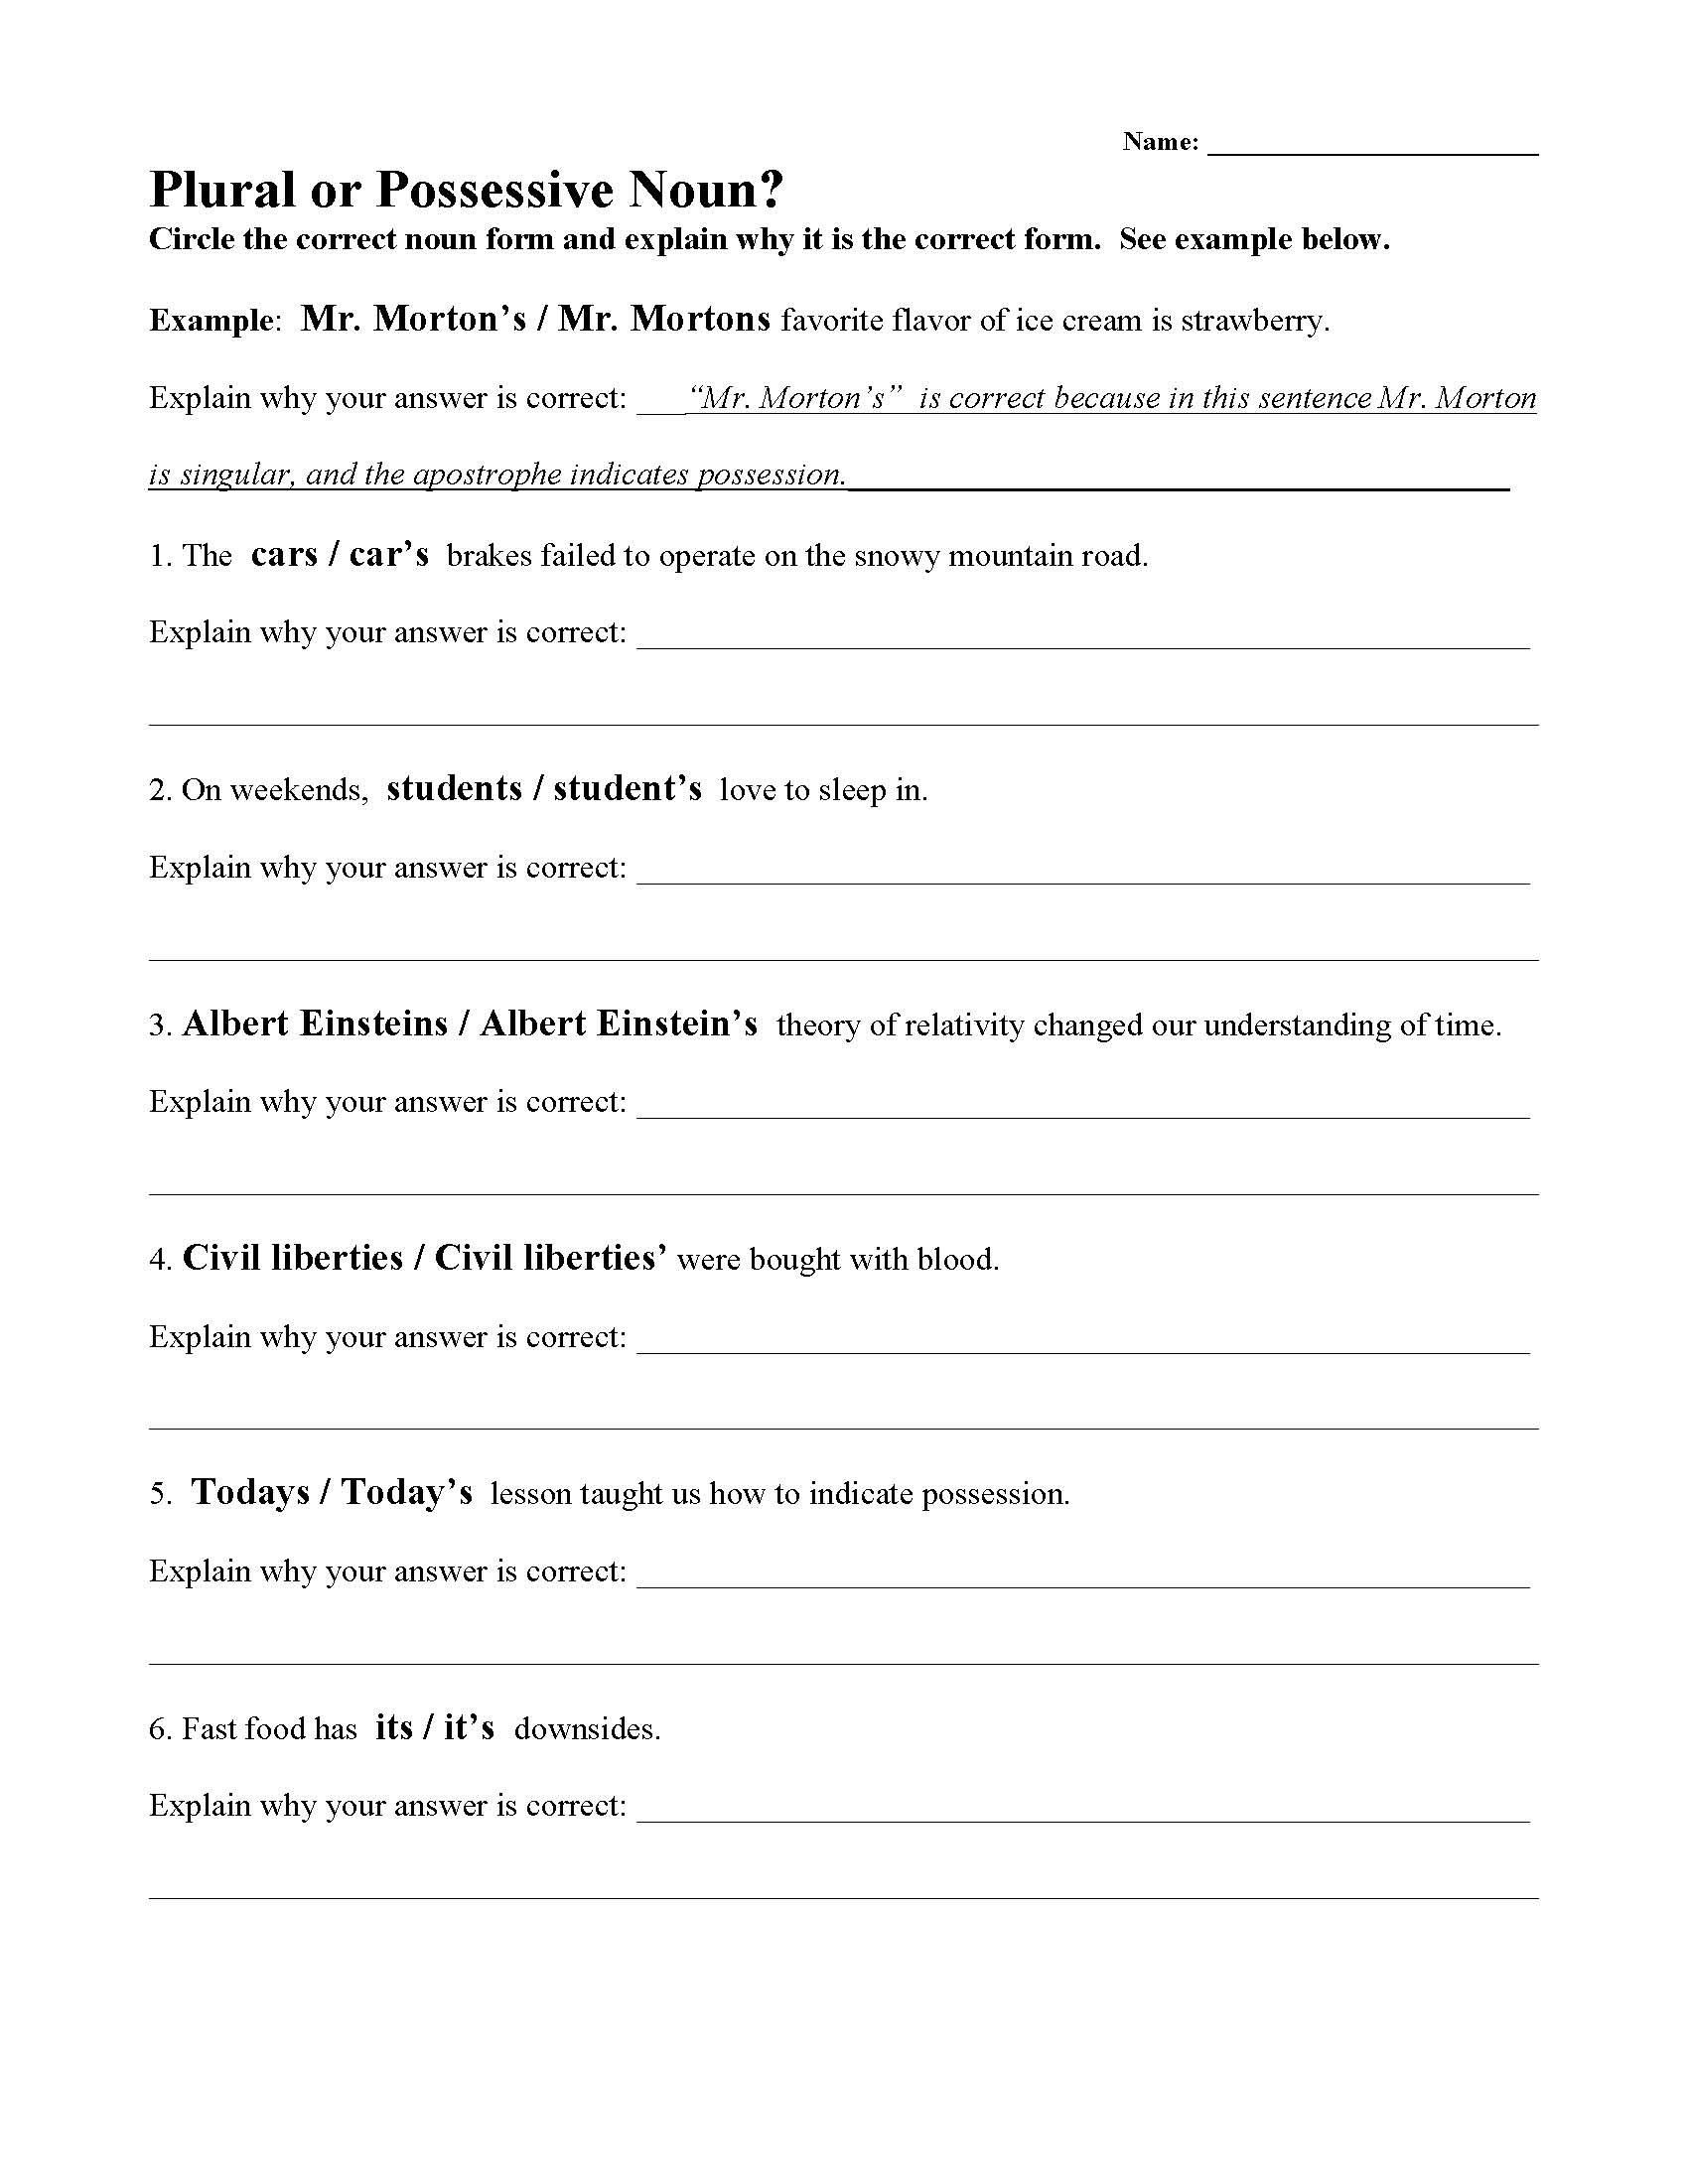 Plural or Possessive Noun Worksheet | Preview